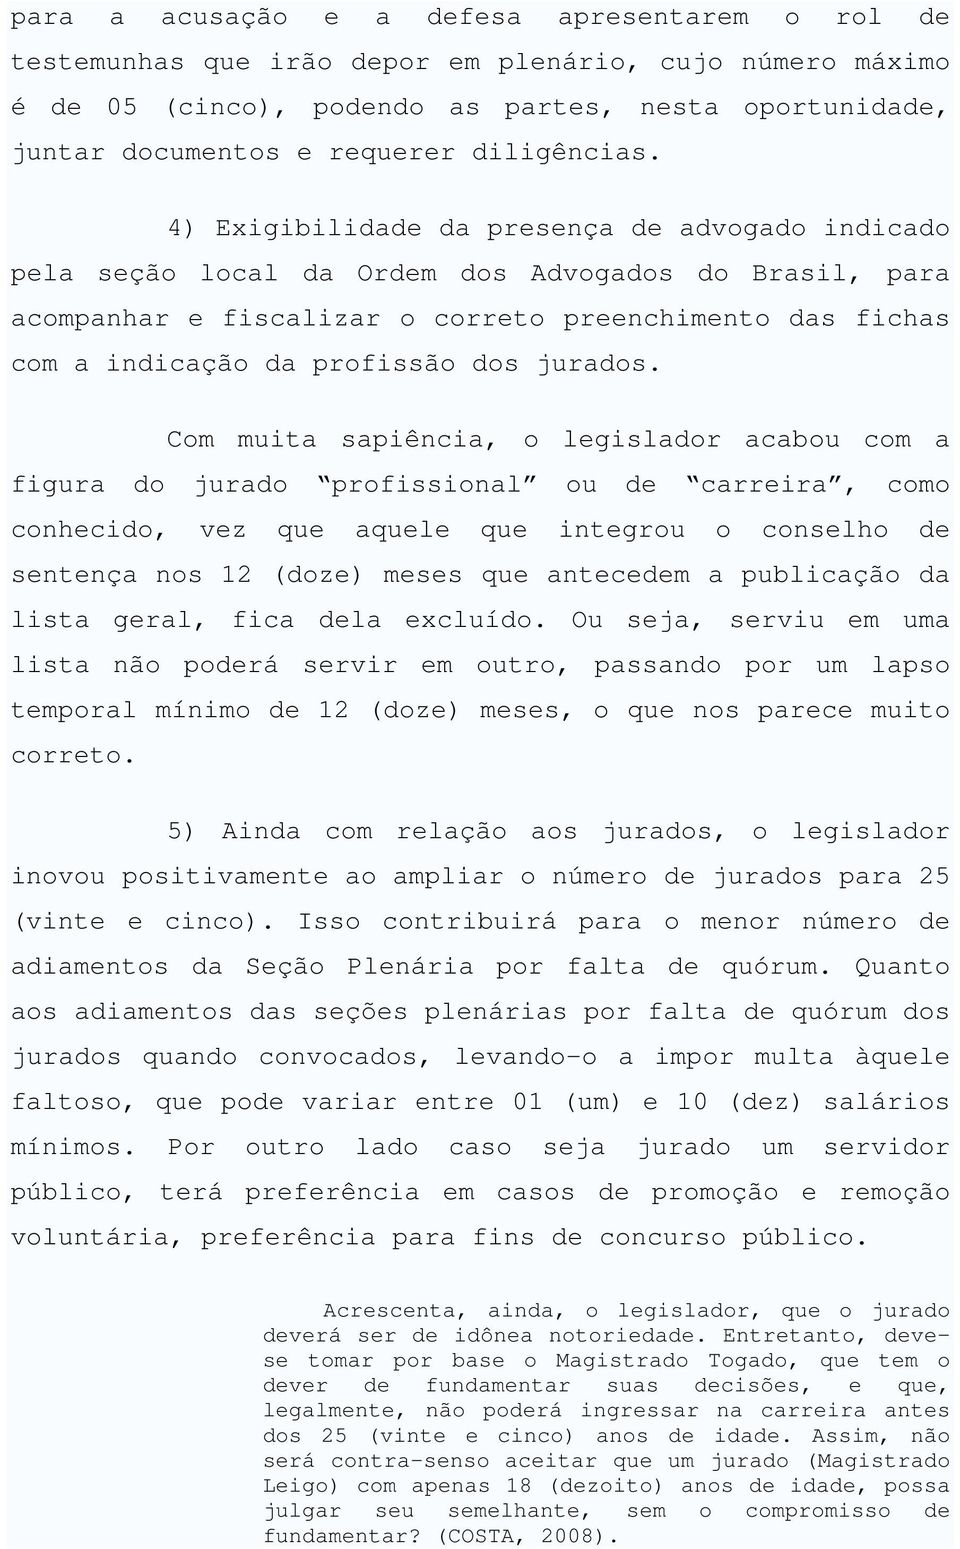 4) Exigibilidade da presença de advogado indicado pela seção local da Ordem dos Advogados do Brasil, para acompanhar e fiscalizar o correto preenchimento das fichas com a indicação da profissão dos